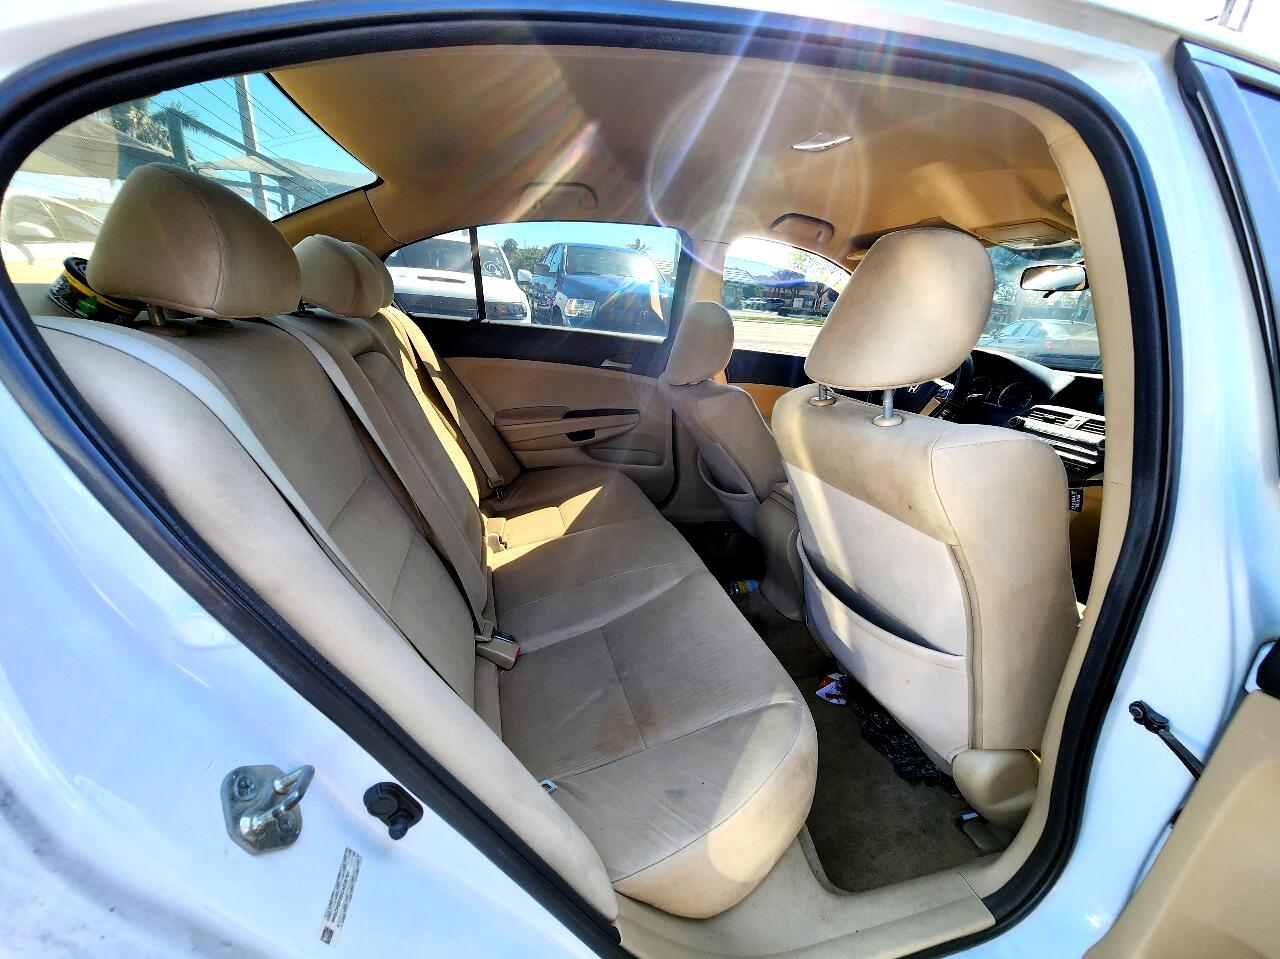 2012 HONDA Accord Sedan - $5,999